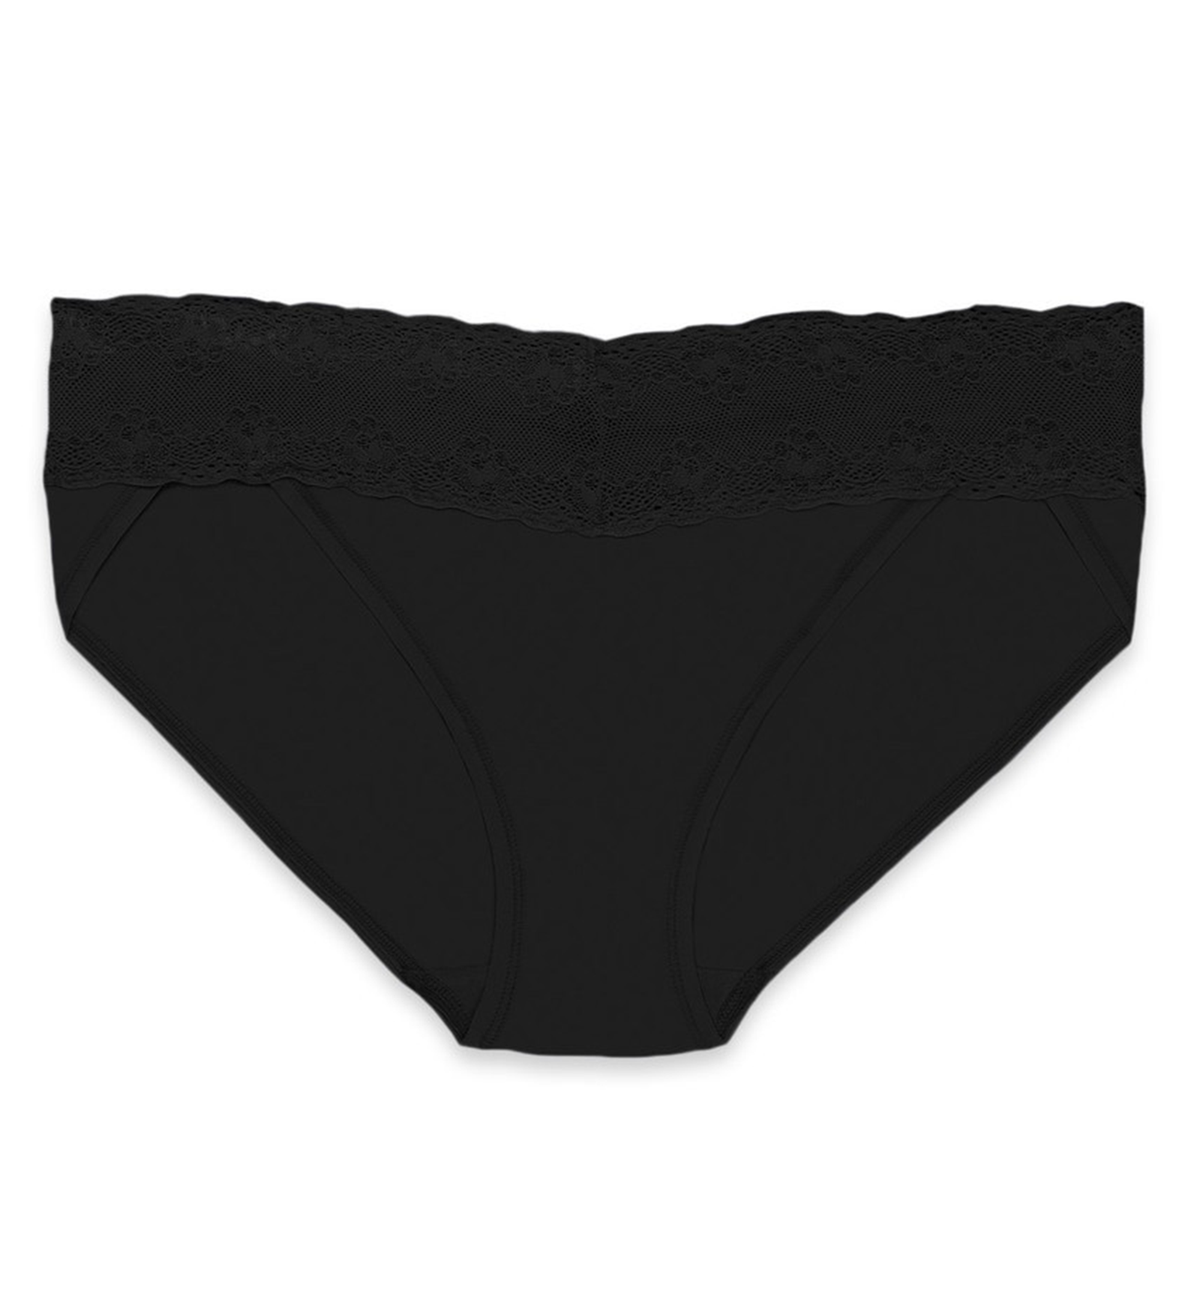 Natori Bliss Perfection V-Kini Panty (756092),O/S,Black - Black,One Size